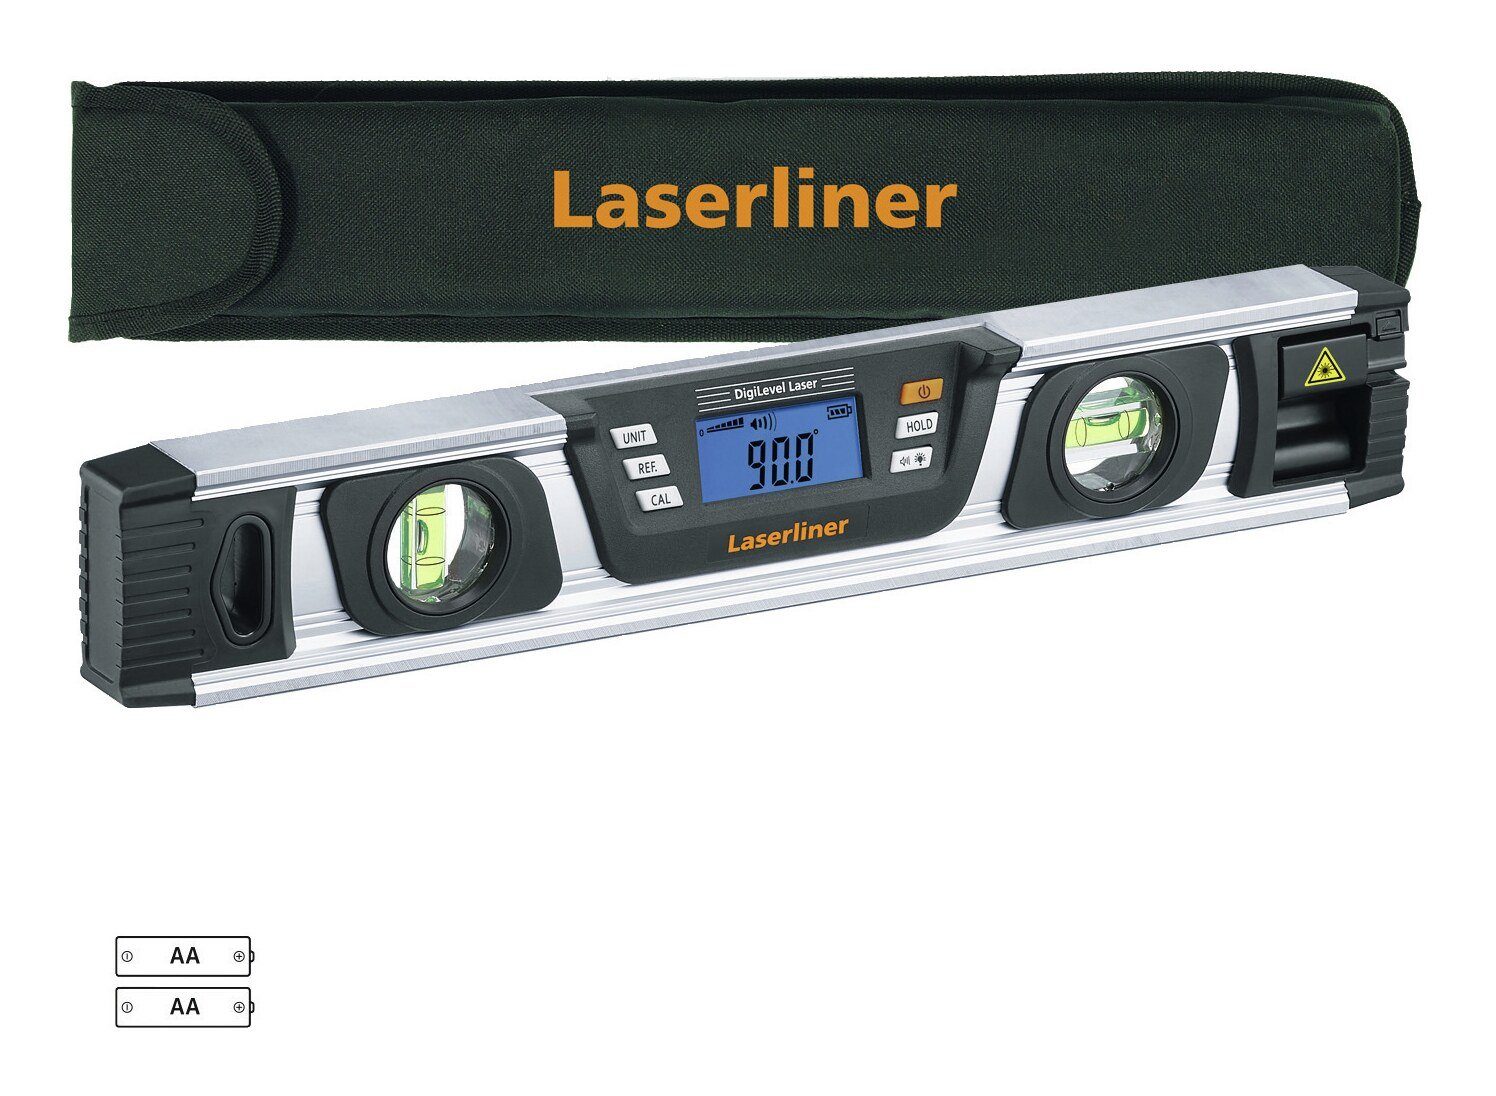 DigiLevel G40 Wasserwaage, 40 cm Laser LASERLINER Laser